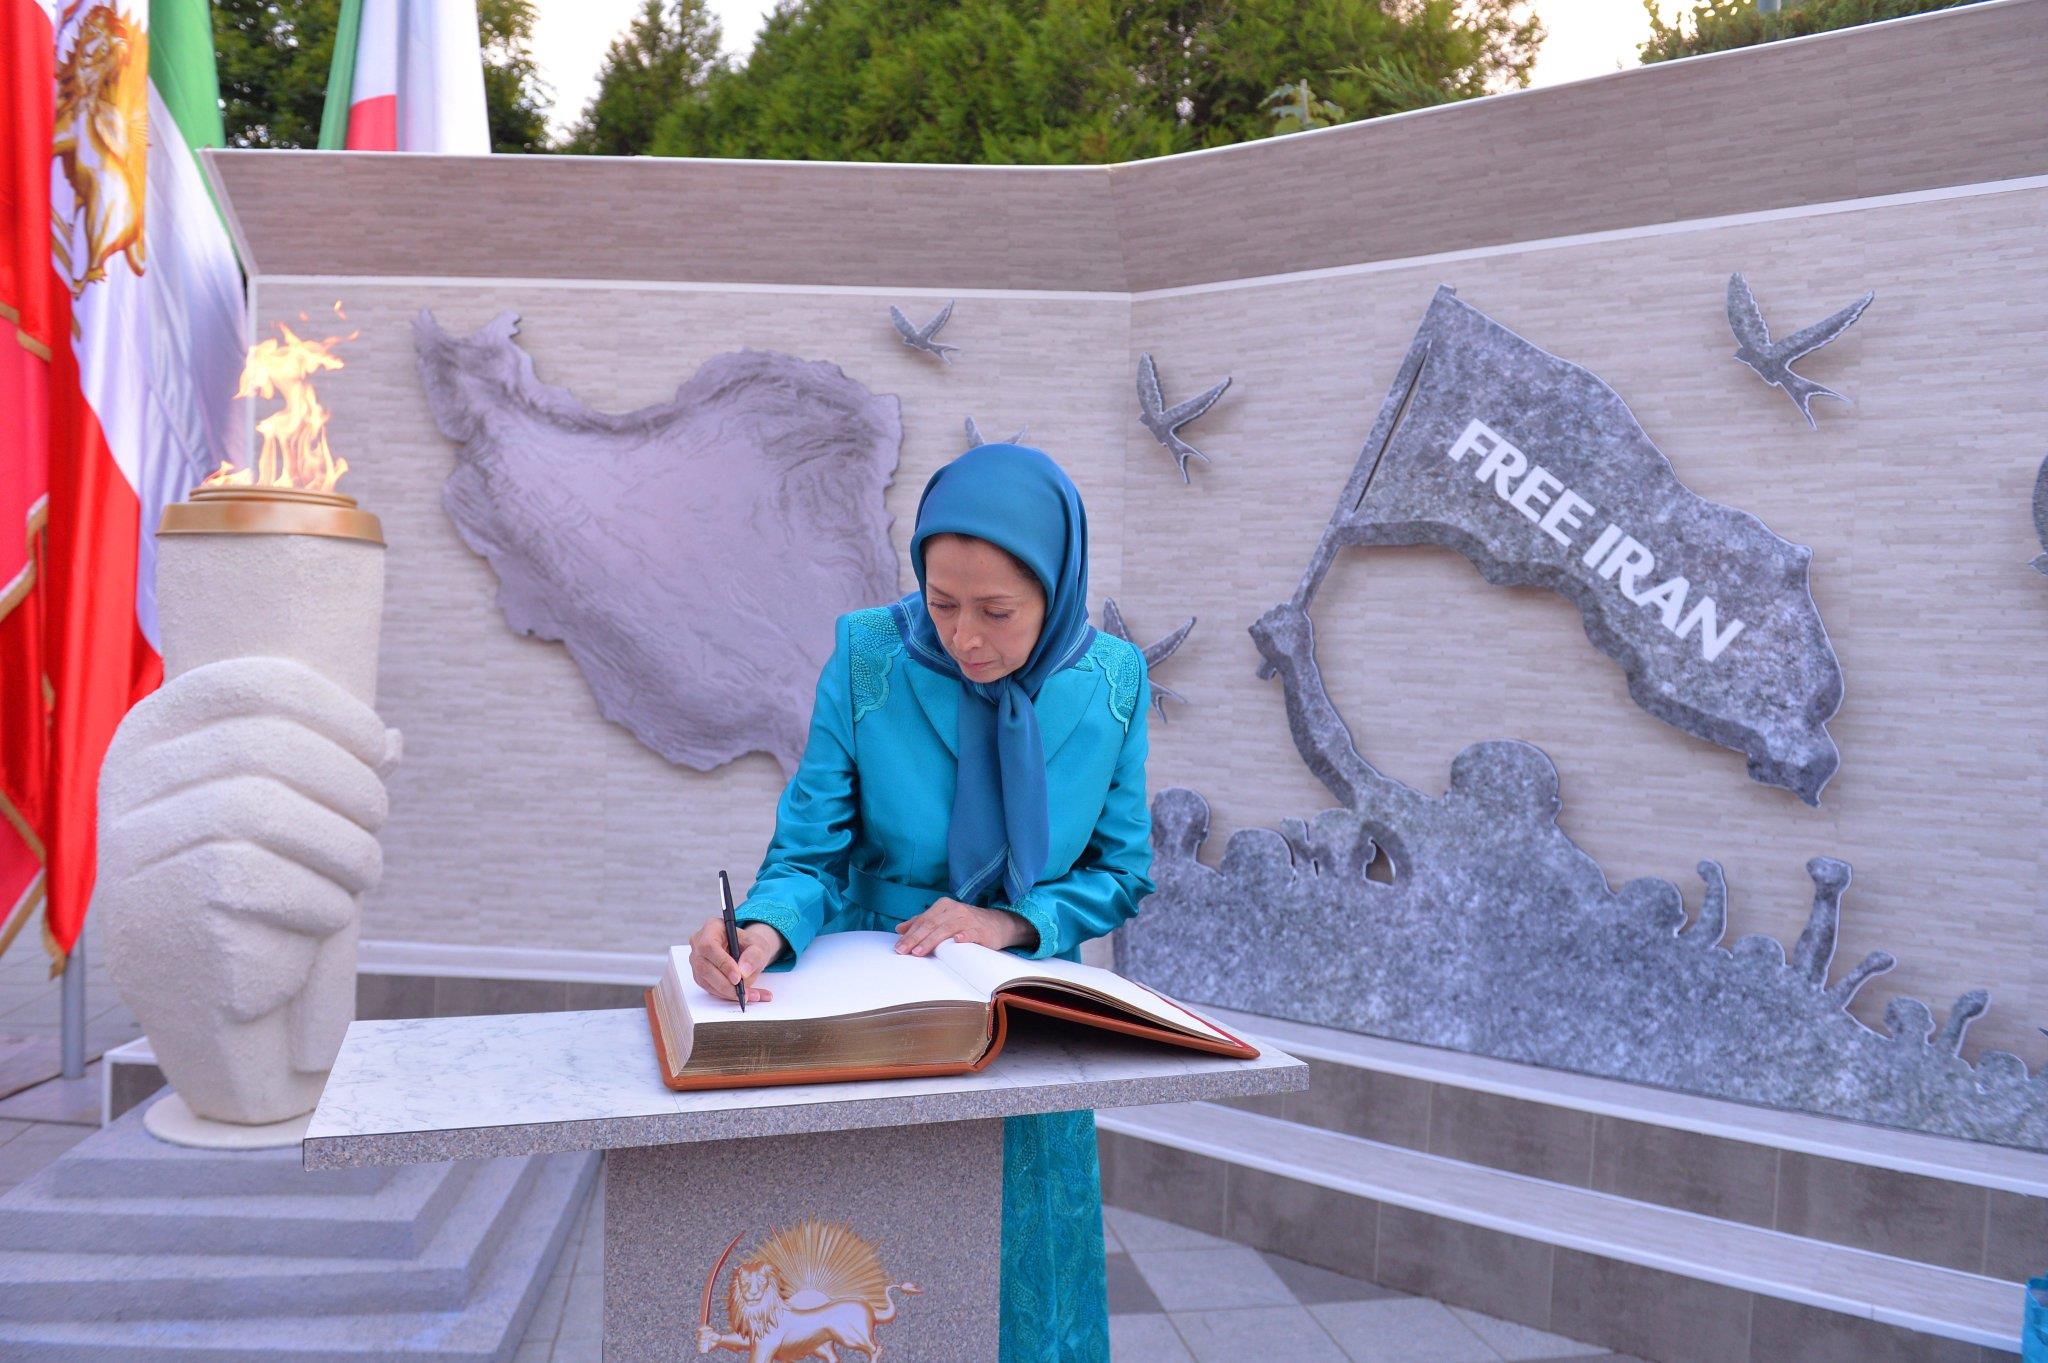 مریم رجوی، ادای احترام در برابر نمادی از تاریخچه بیش از نیم قرن مبارزات مردم ایران در برابر استبداد